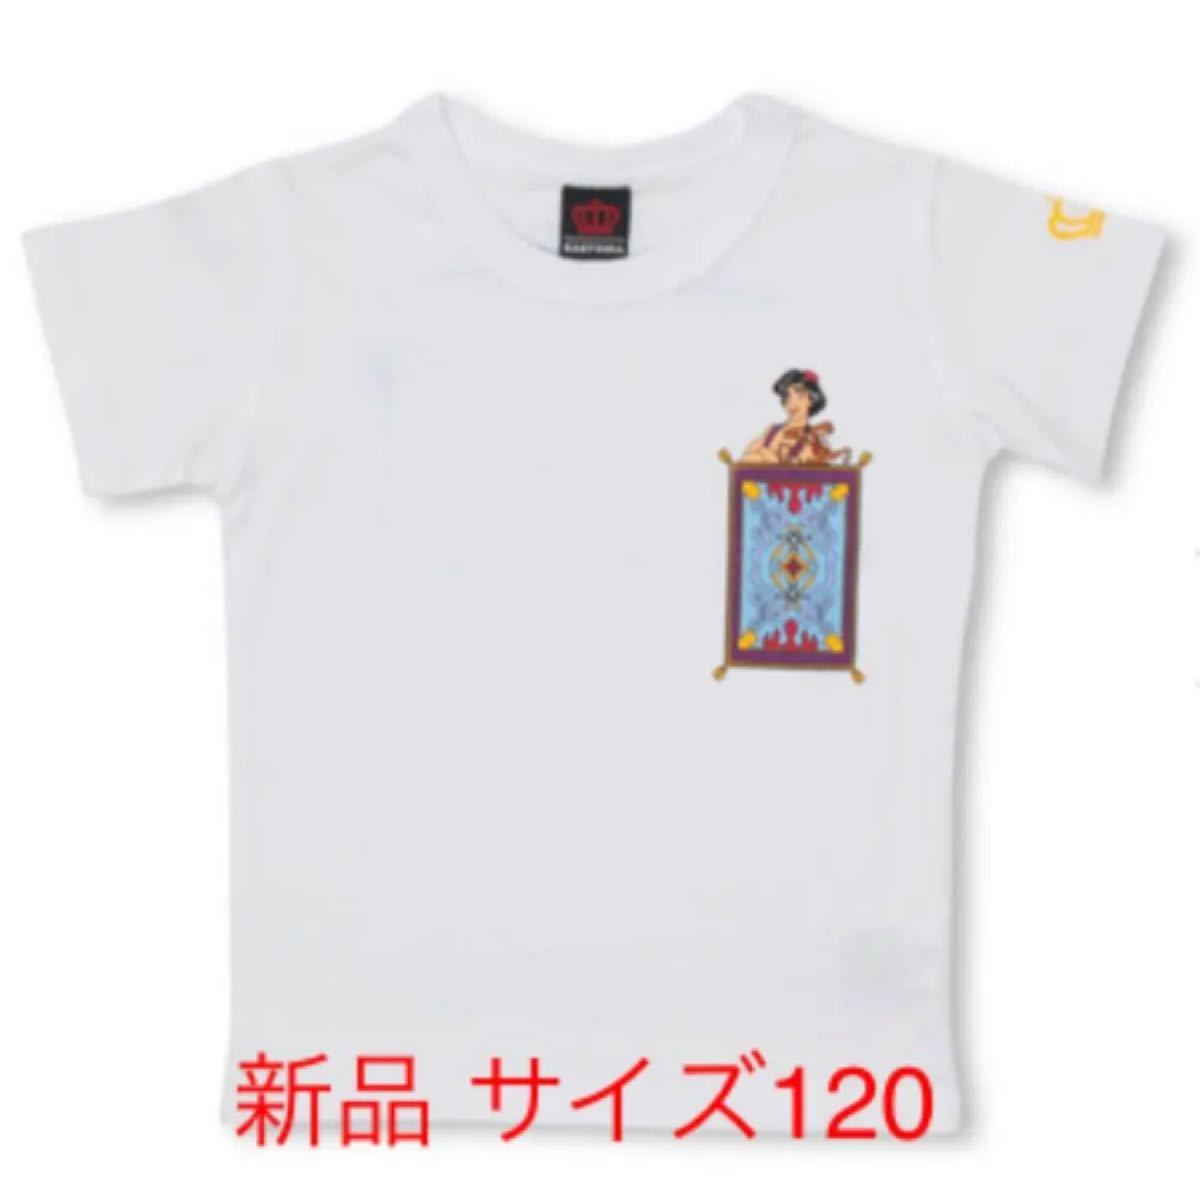 Paypayフリマ ディズニー アラジン Tシャツ 1 男の子 女の子 ベビードール 半袖